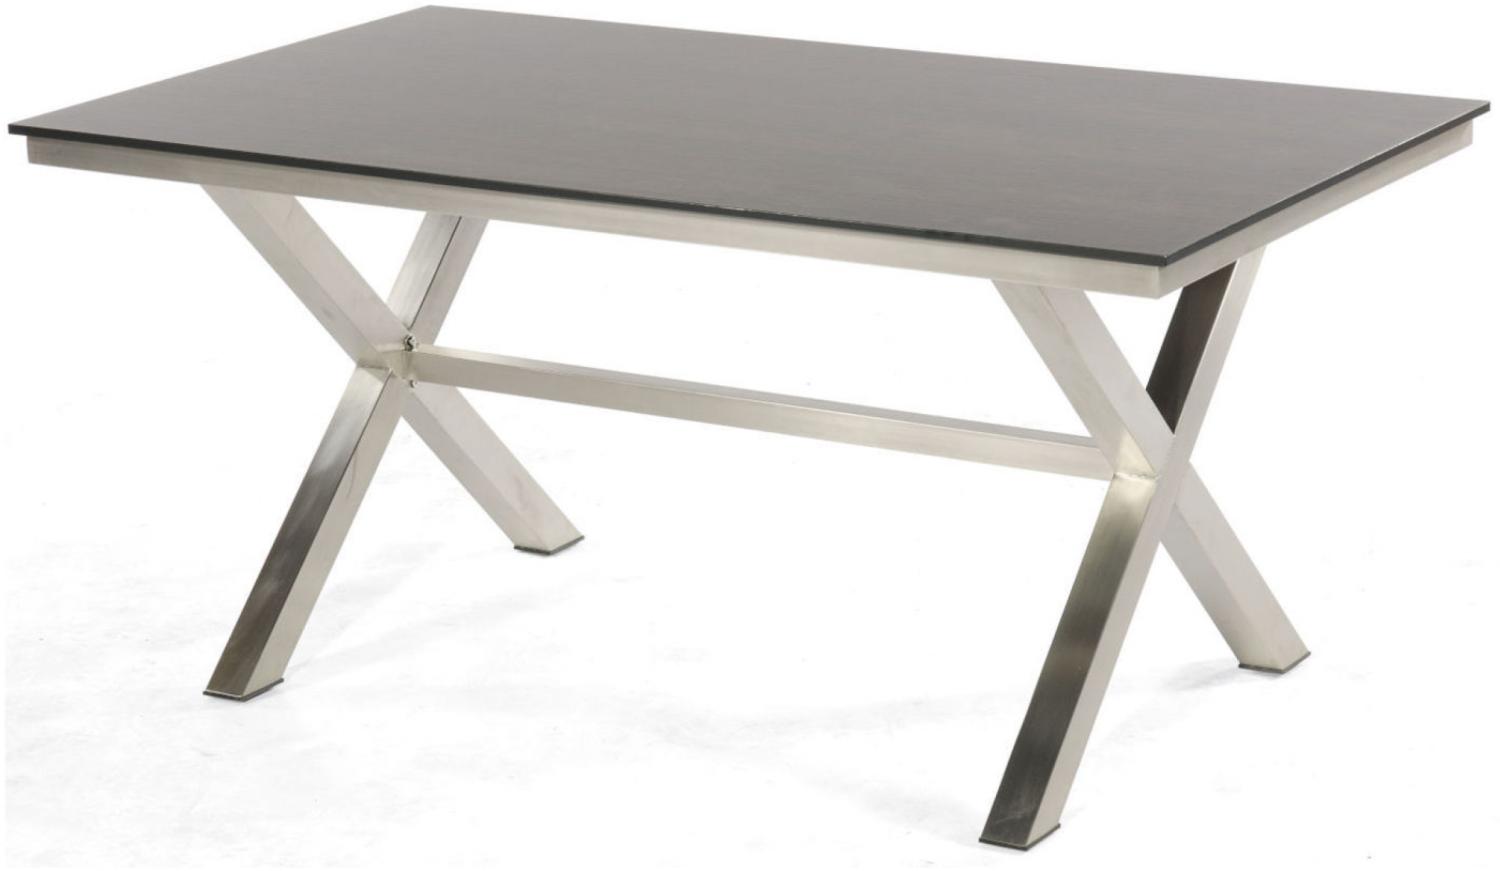 Sonnenpartner Gartentisch Base-Spectra 160x90 cm Edelstahl Tischsystem Tischplatte Pure Teakholz natur 80050526 Bild 1